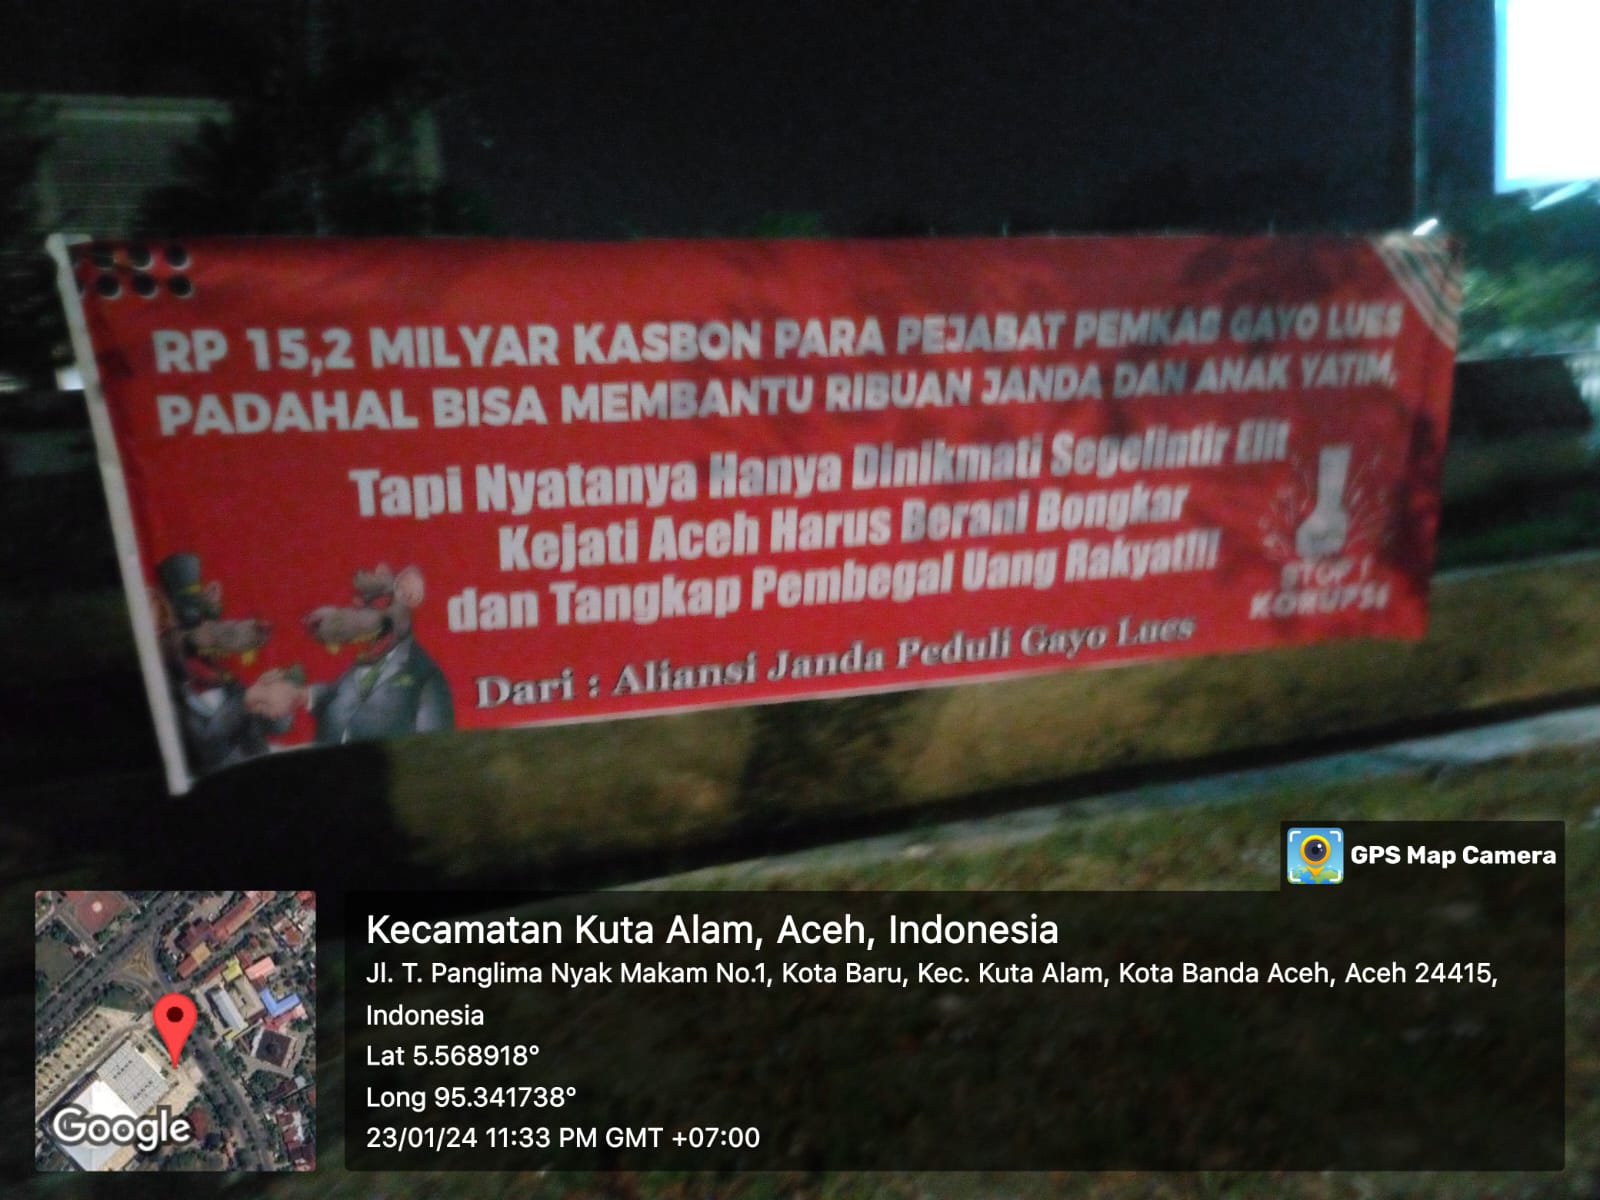 Spanduk Selamat Datang Pejabat Gayo Lues ke Kejati Aceh dan Bongkar Kasbon Rp 15,2 M Beredar di Banda Aceh